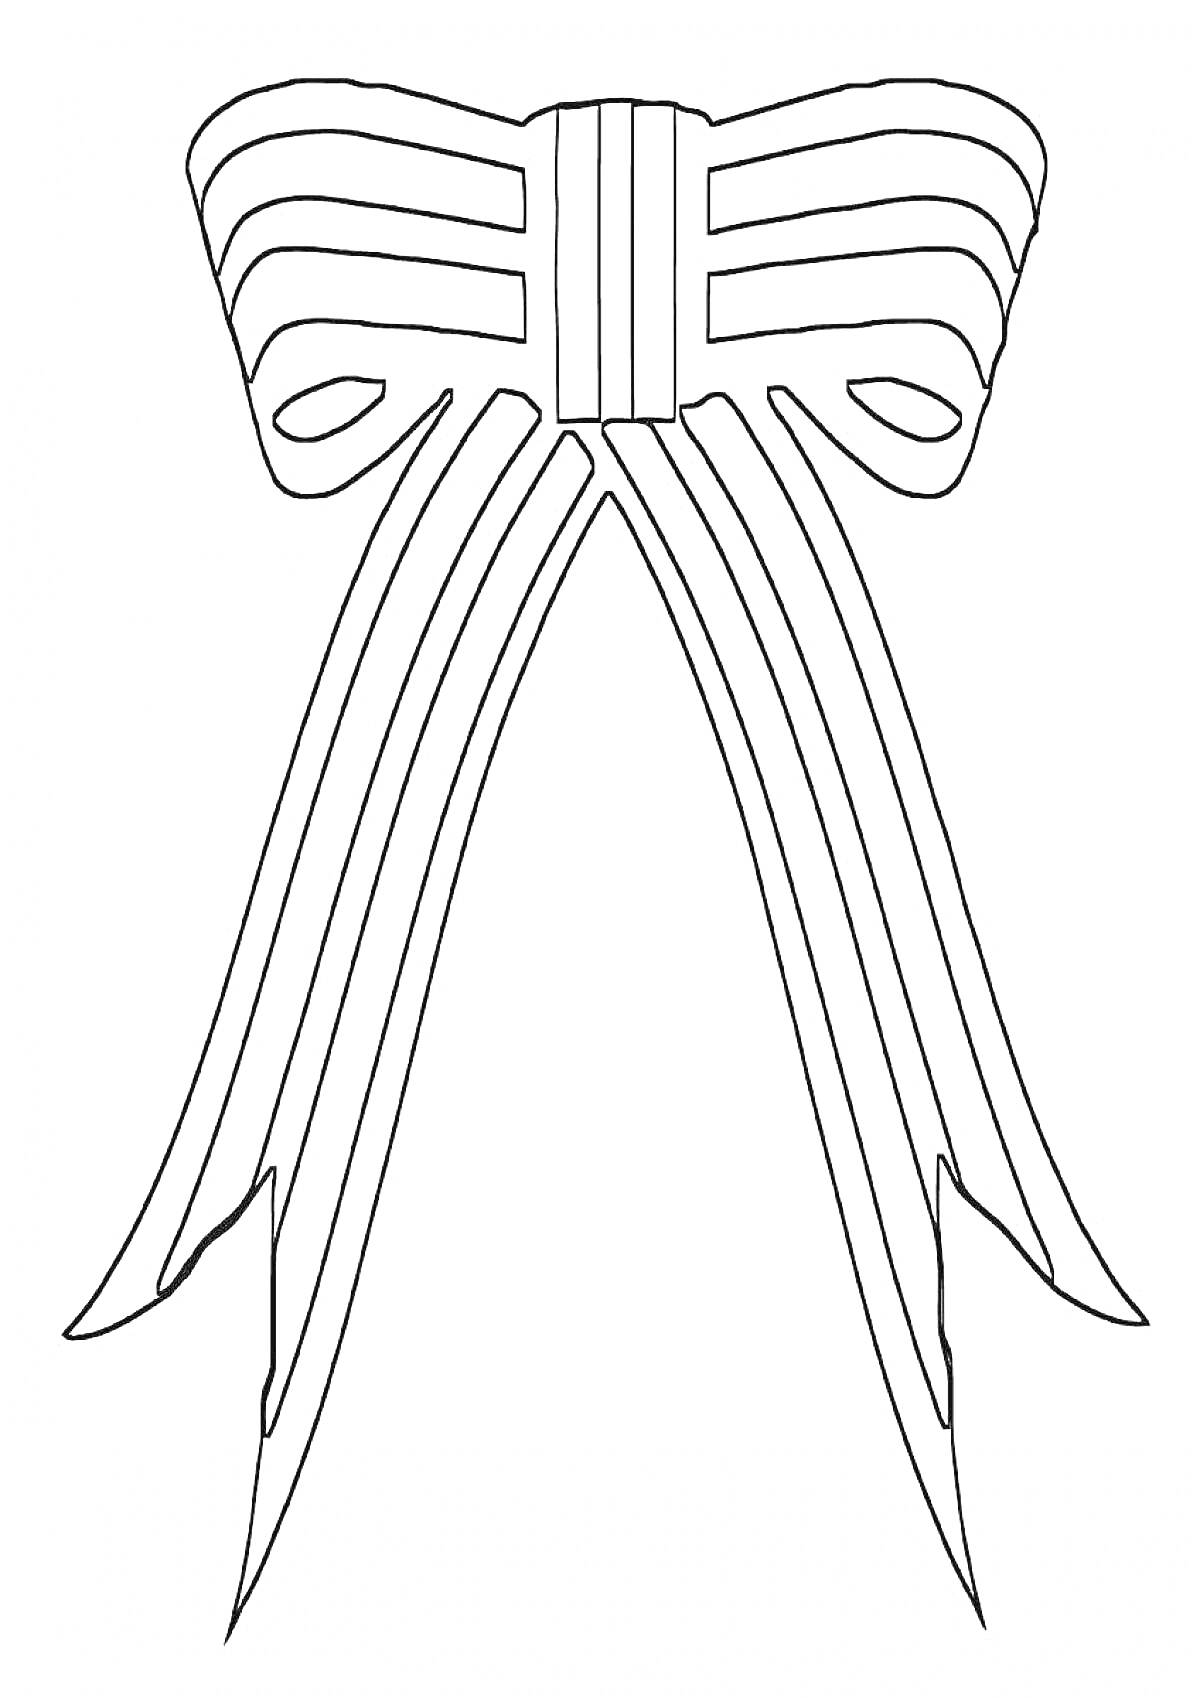 Раскраска Георгиевская ленточка в виде банта с полосами